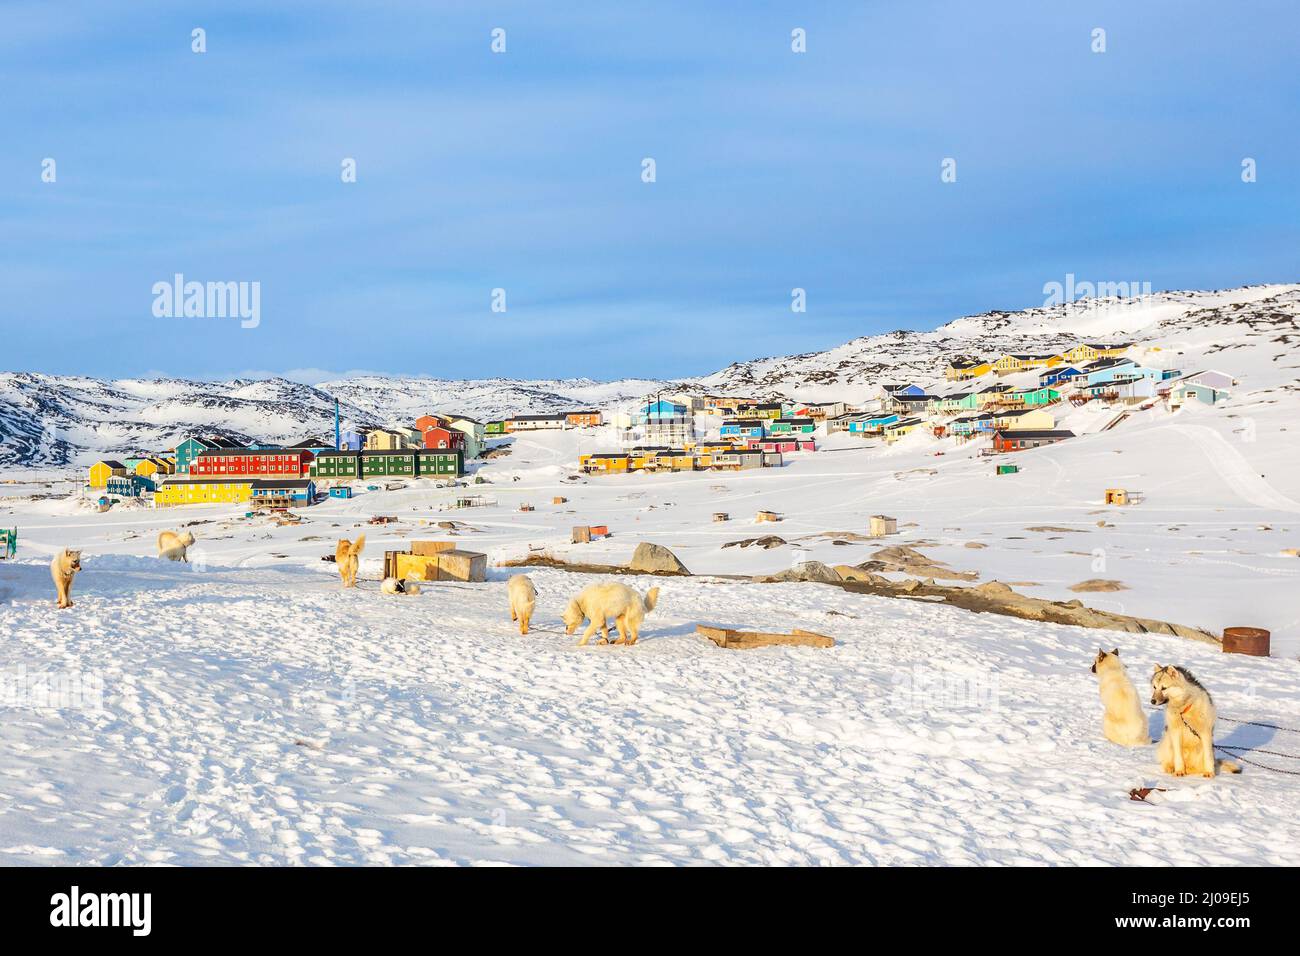 Perros de trineo y casas Inuit en las colinas rocosas cubiertas de nieve, Ilulissat, Avannaata municipio, Groenlandia Foto de stock